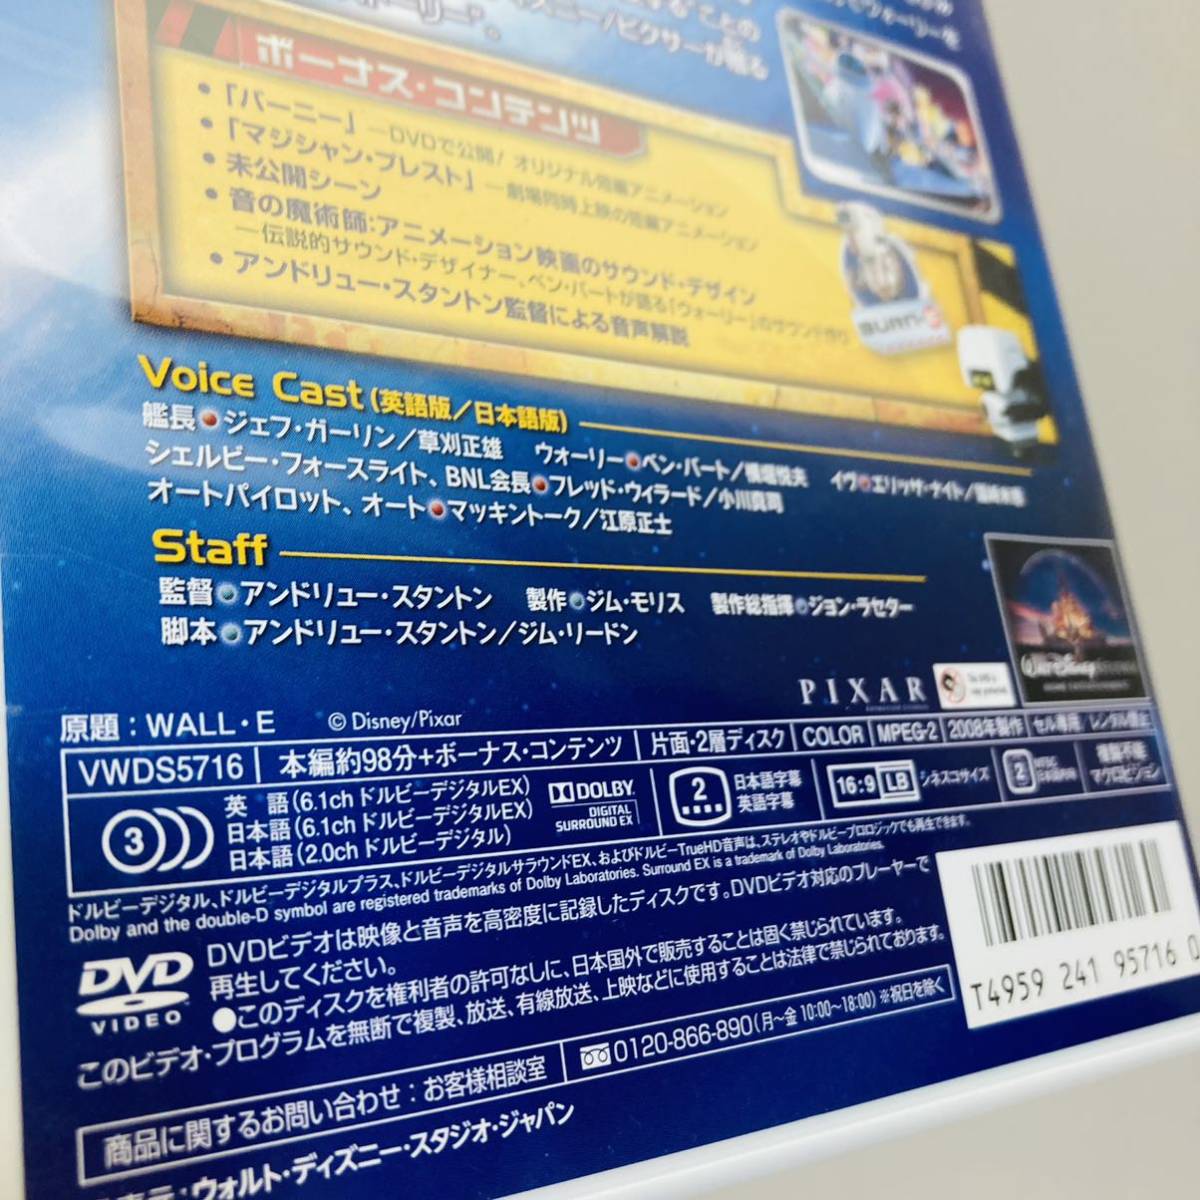 831.送料無料 ウォーリー DVD ディズニー WALL.E 映画 アニメ 正規品